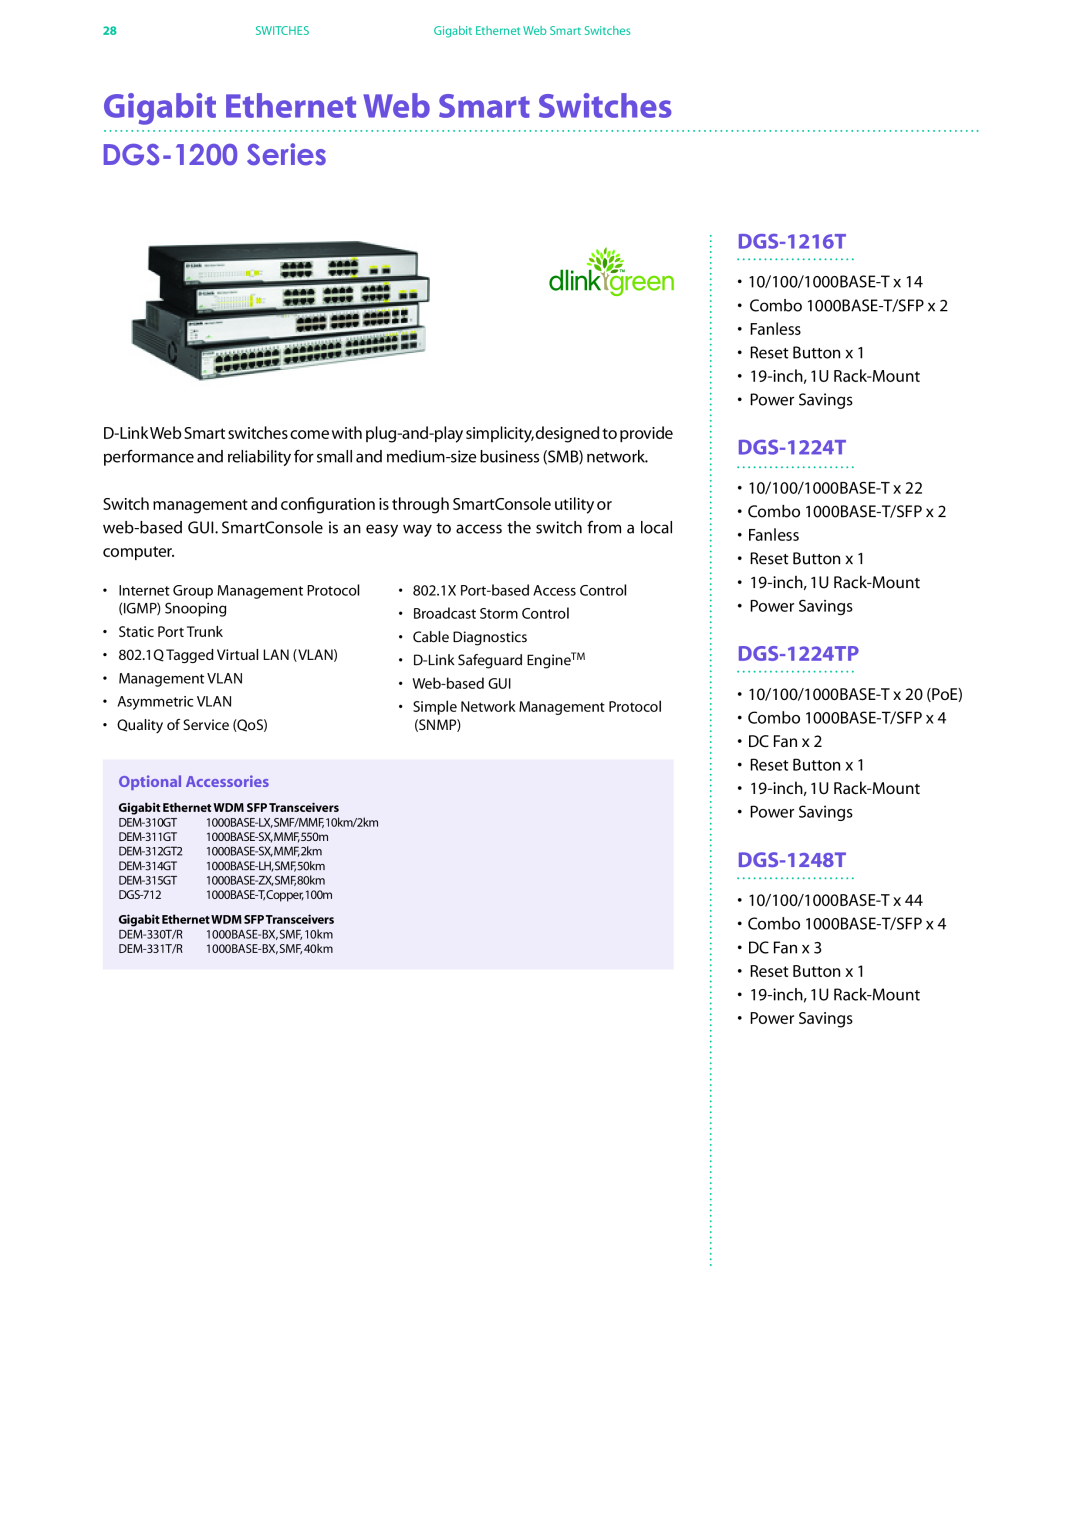 D-Link DES-7200 manual DGS-1200 Series, DGS-1216T, DGS-1224TP, DGS-1248T, Gigabit Ethernet Web Smart Switches 